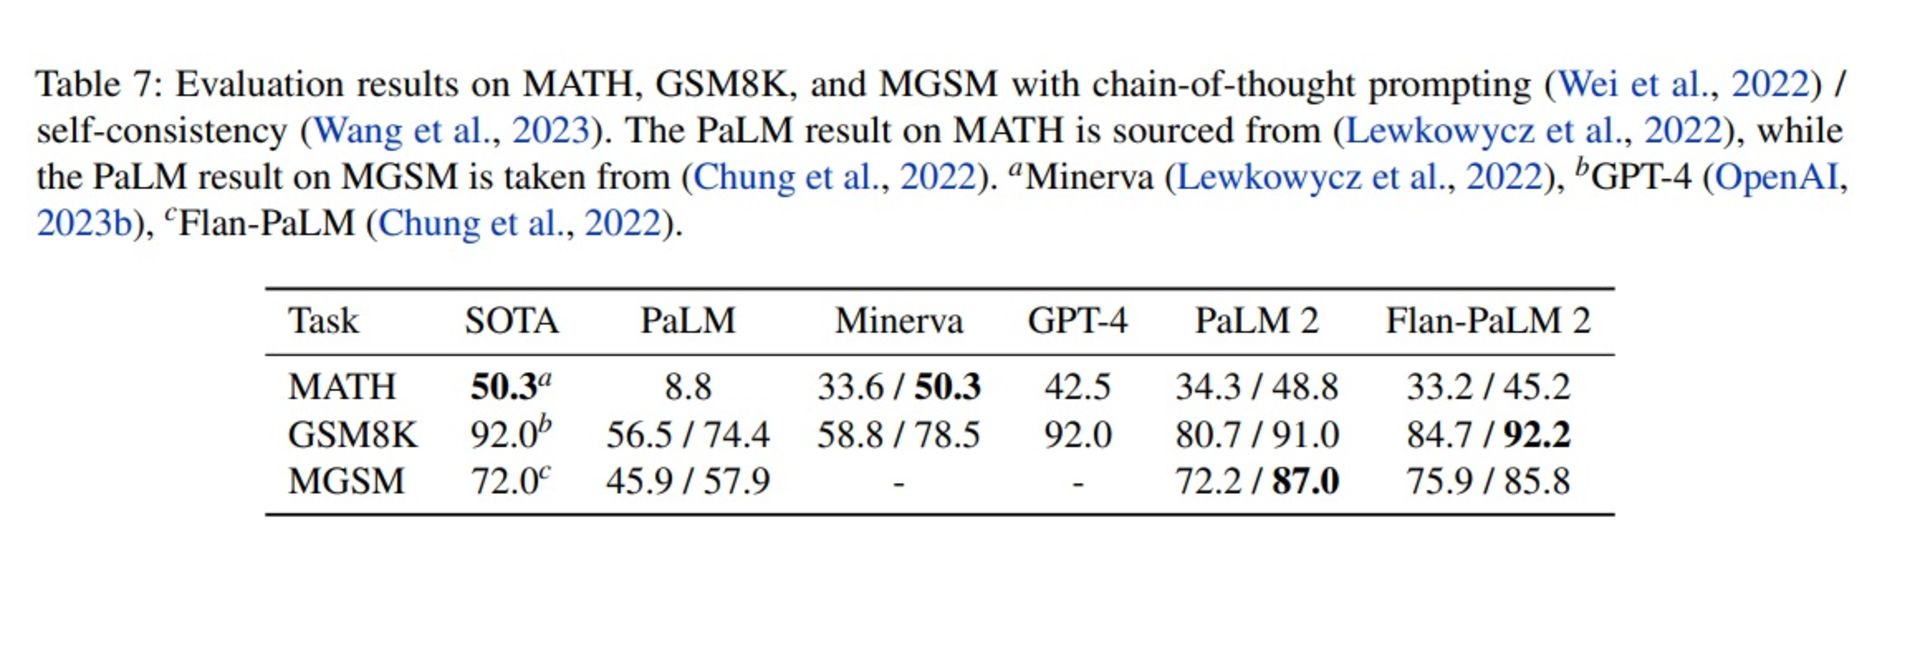 جدول امتیازهای Palm 2 و GPT-4 با قابلیت پرسش زنجیره فکر